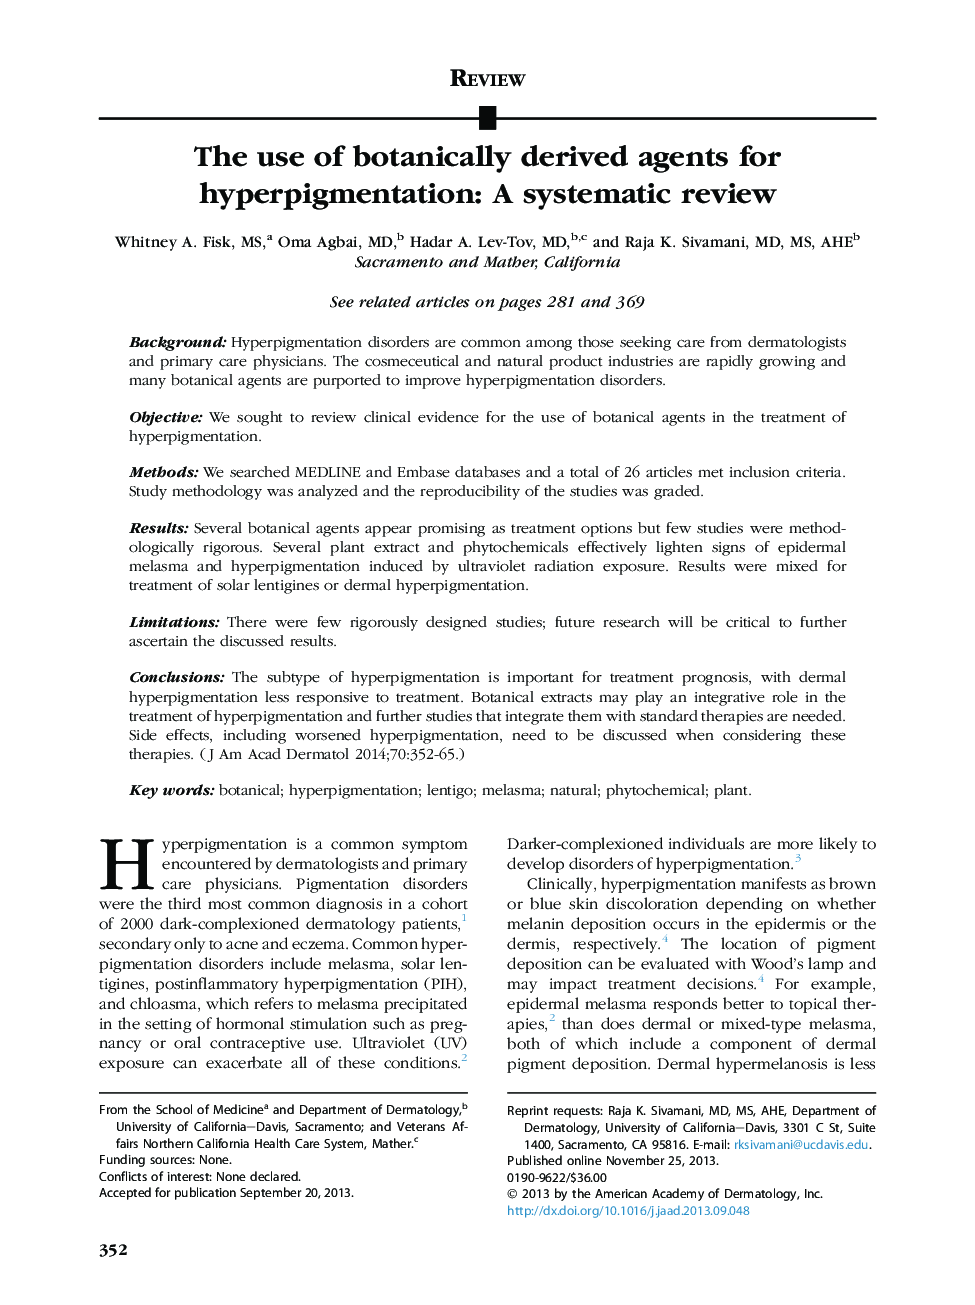 بررسی استفاده از عوامل گیاهی مشتق شده برای هیپرپیگمانته: بررسی سیستماتیک 